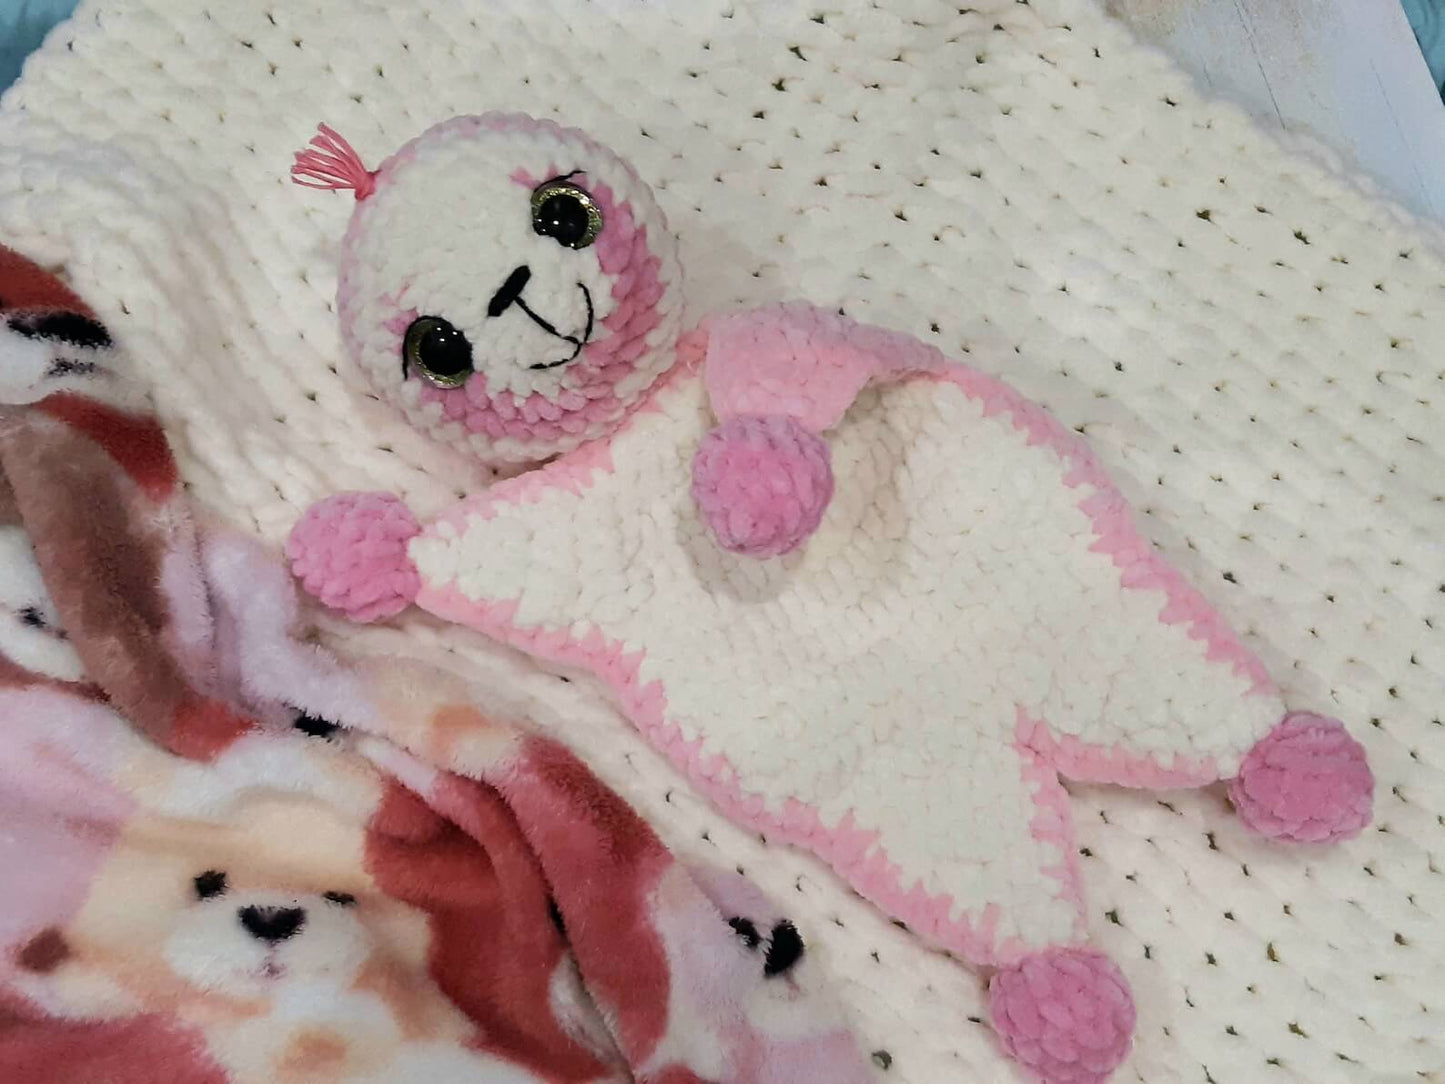 Sloth Lovey Crochet Pattern